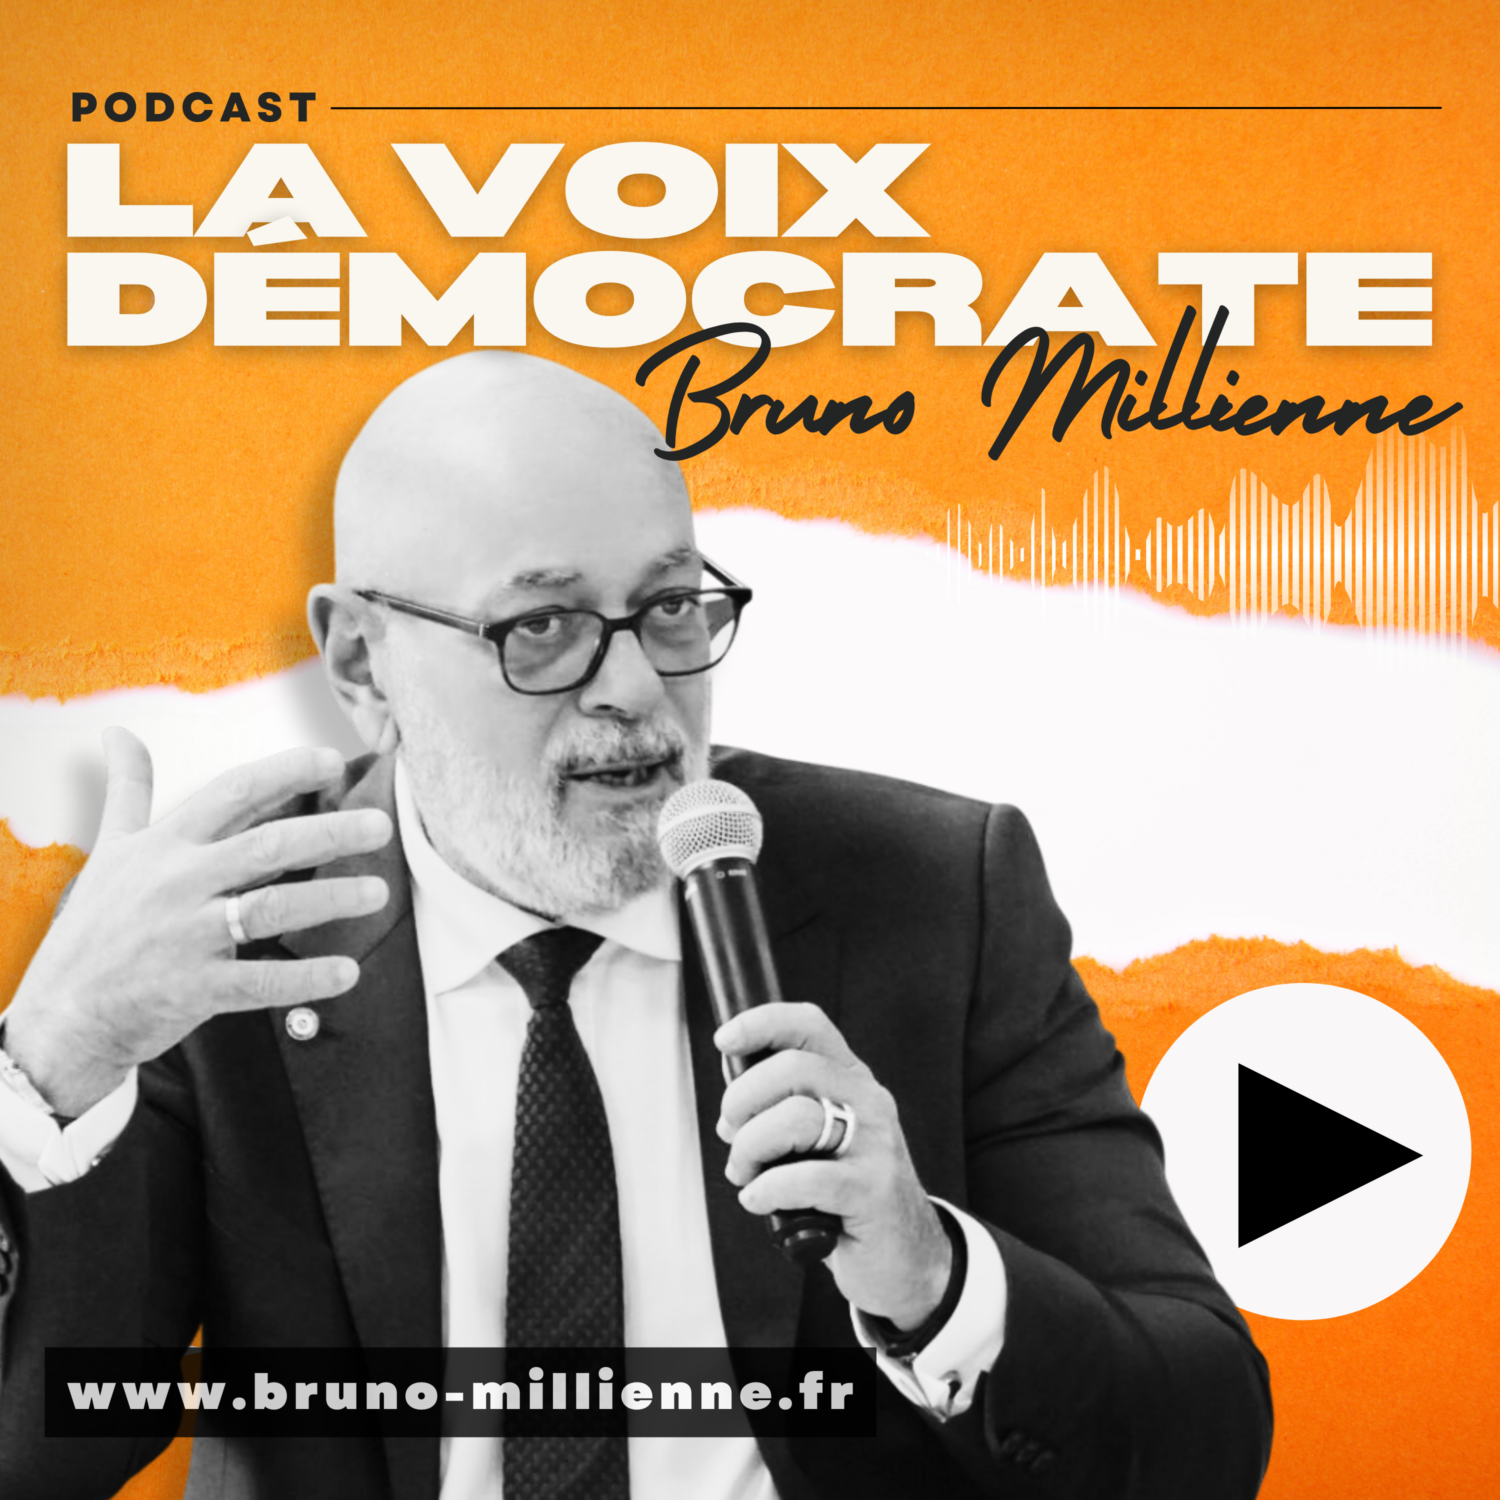 La Voix Démocrate le podcast hebdomadaire de Bruno Millienne